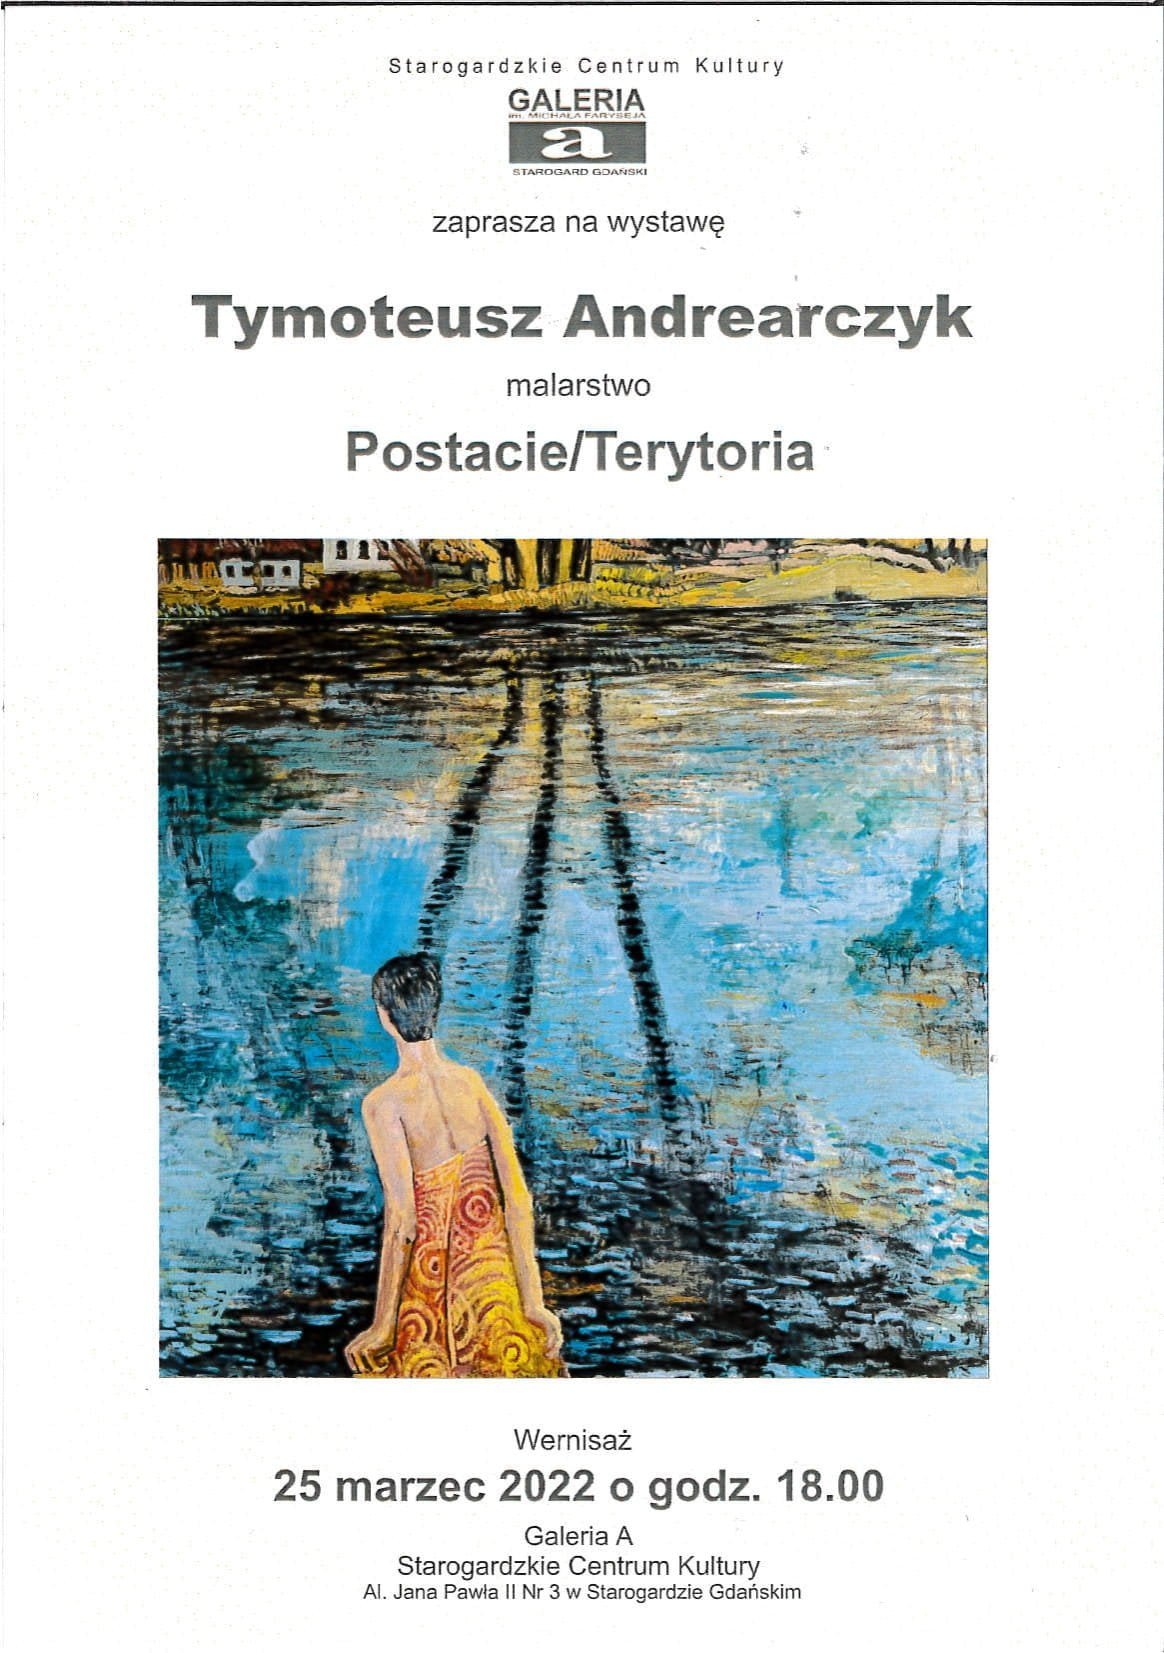 Tymoteusz Andrearczyk malarstwo "Postacie/Terytoria"